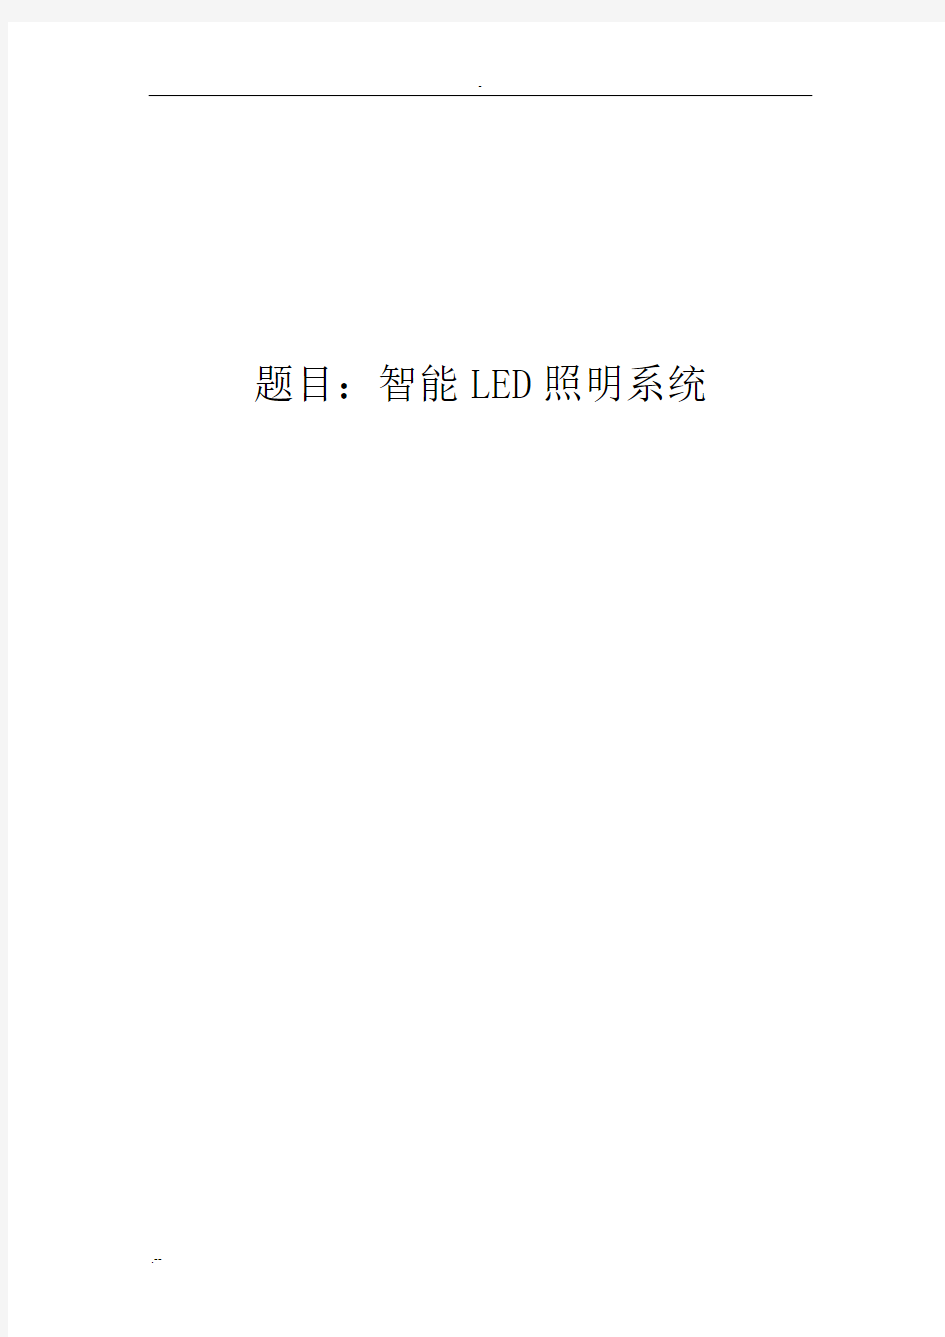 智能LED照明控制系统